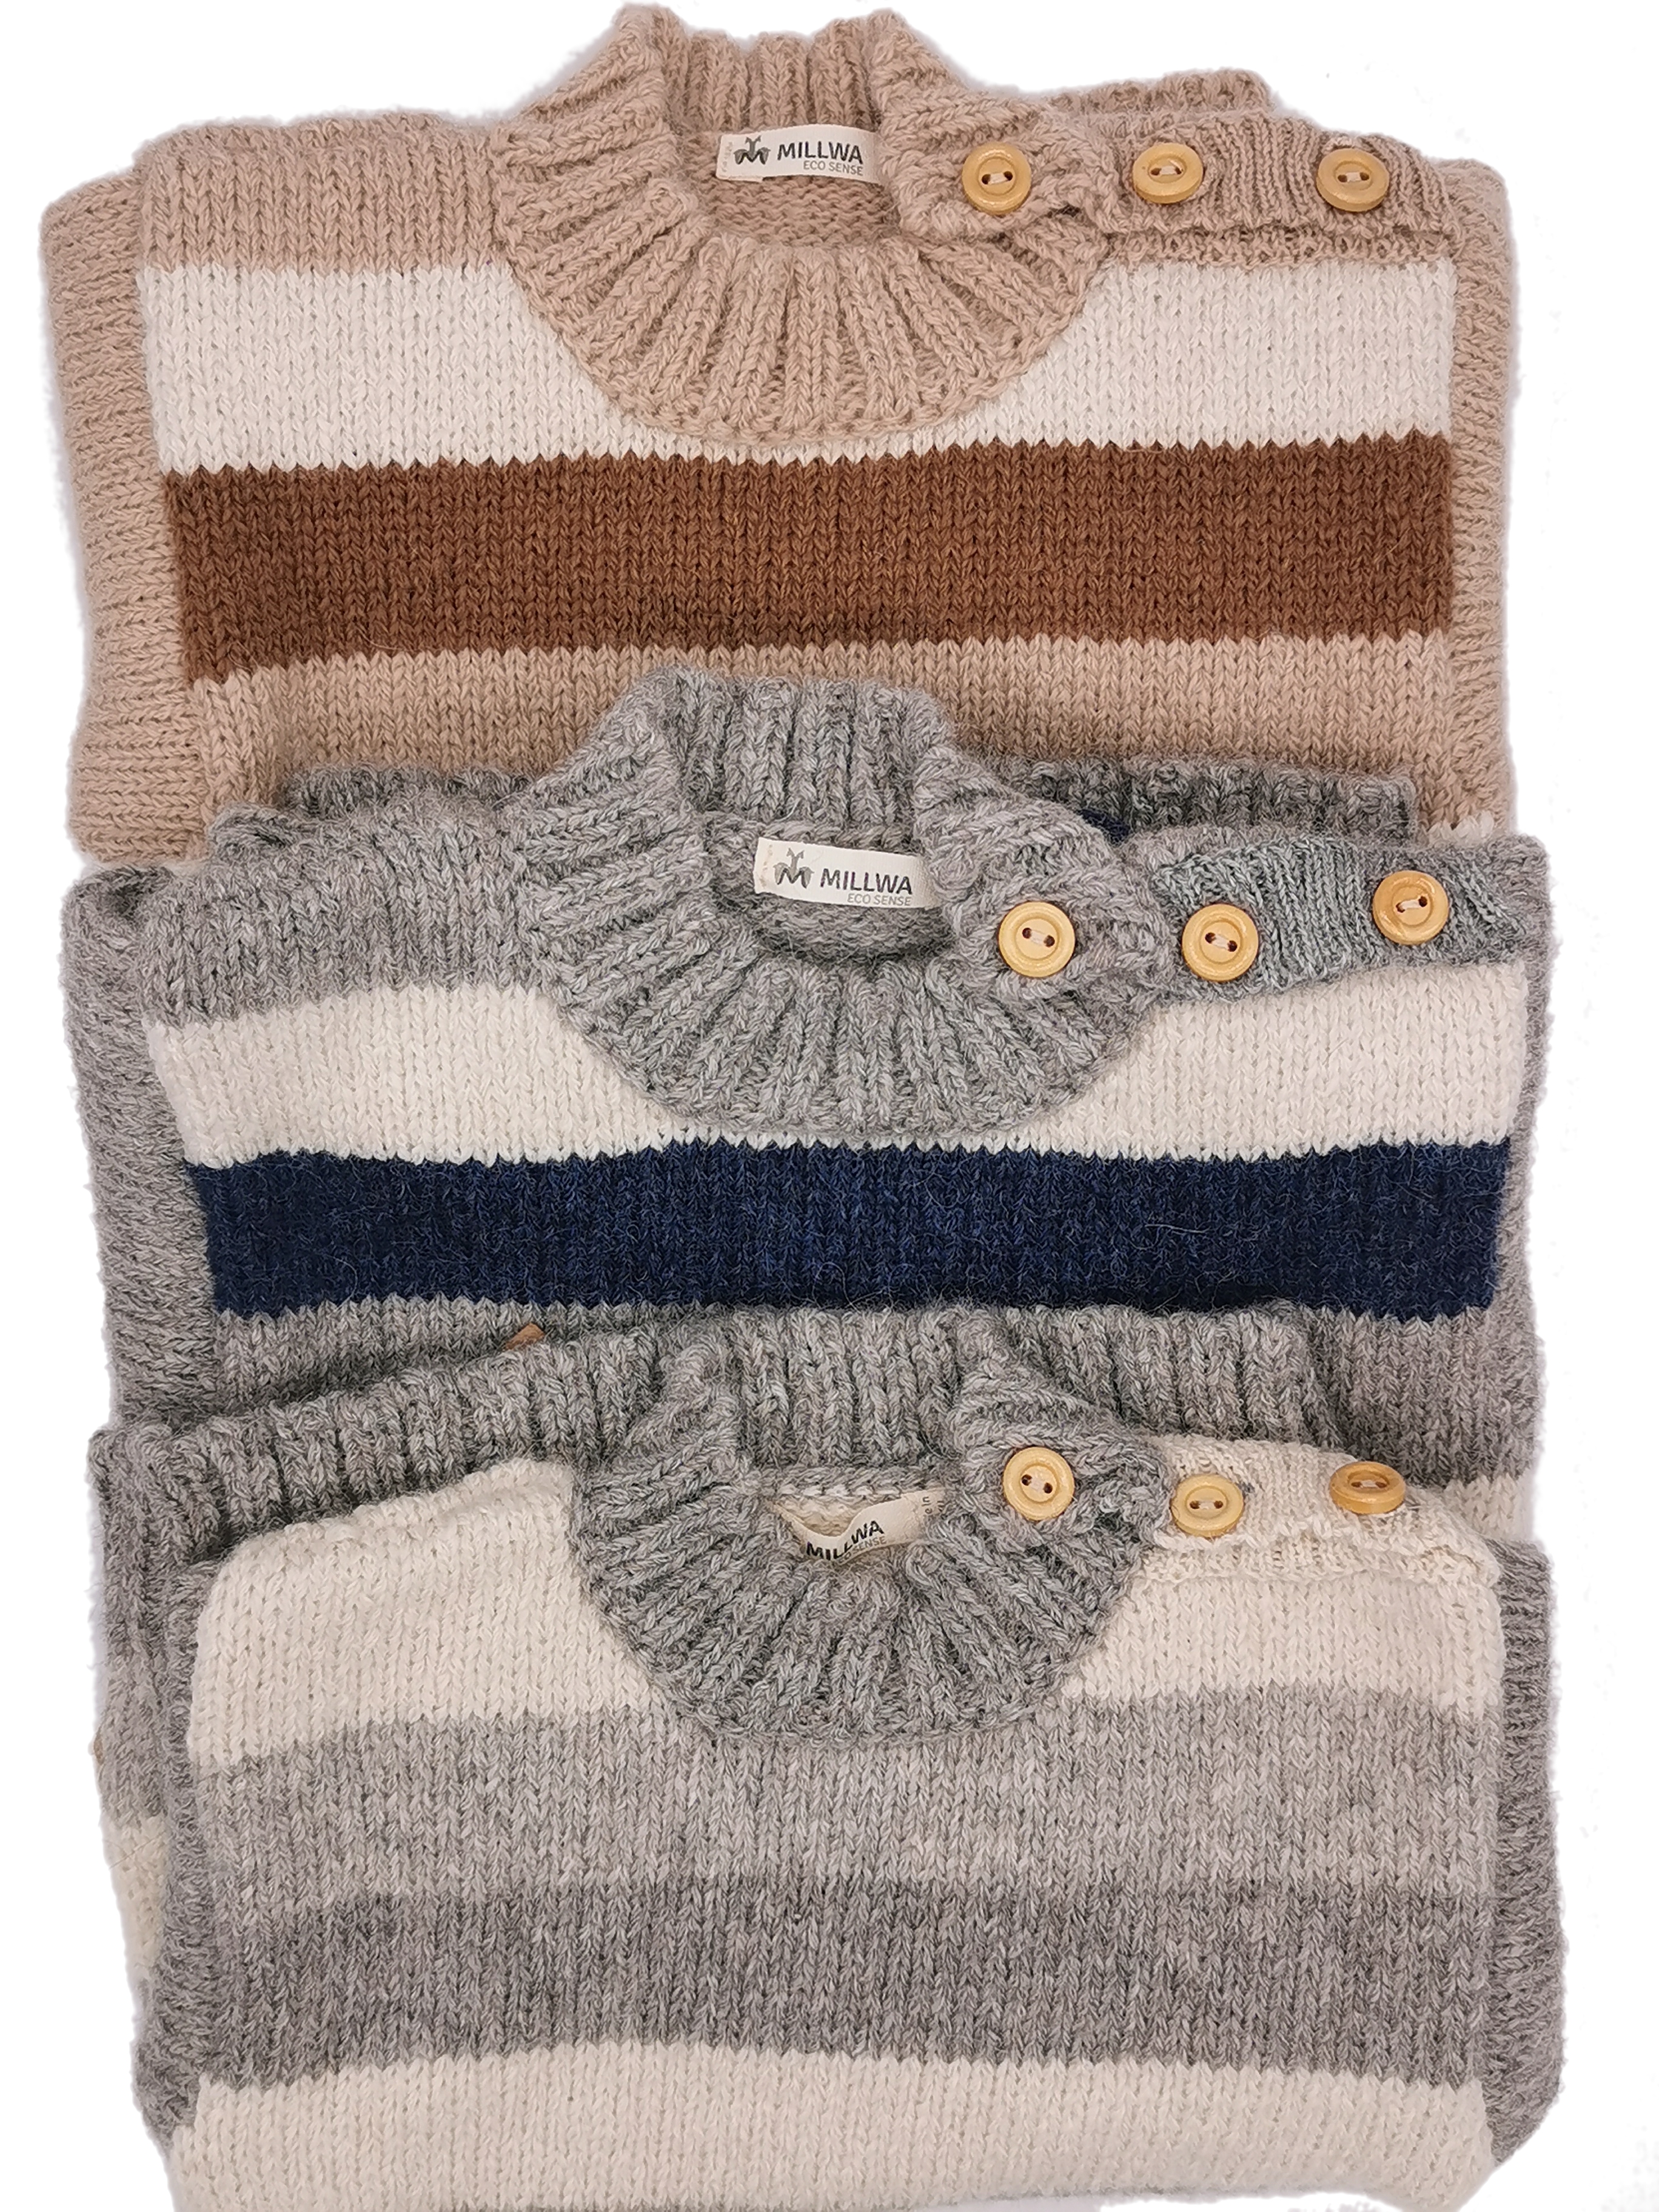 Hochwertige Pullover für Kinder im edlem Blockstreifendesign aus feinster Babyalpakawolle in 3 verschiedenen Farben